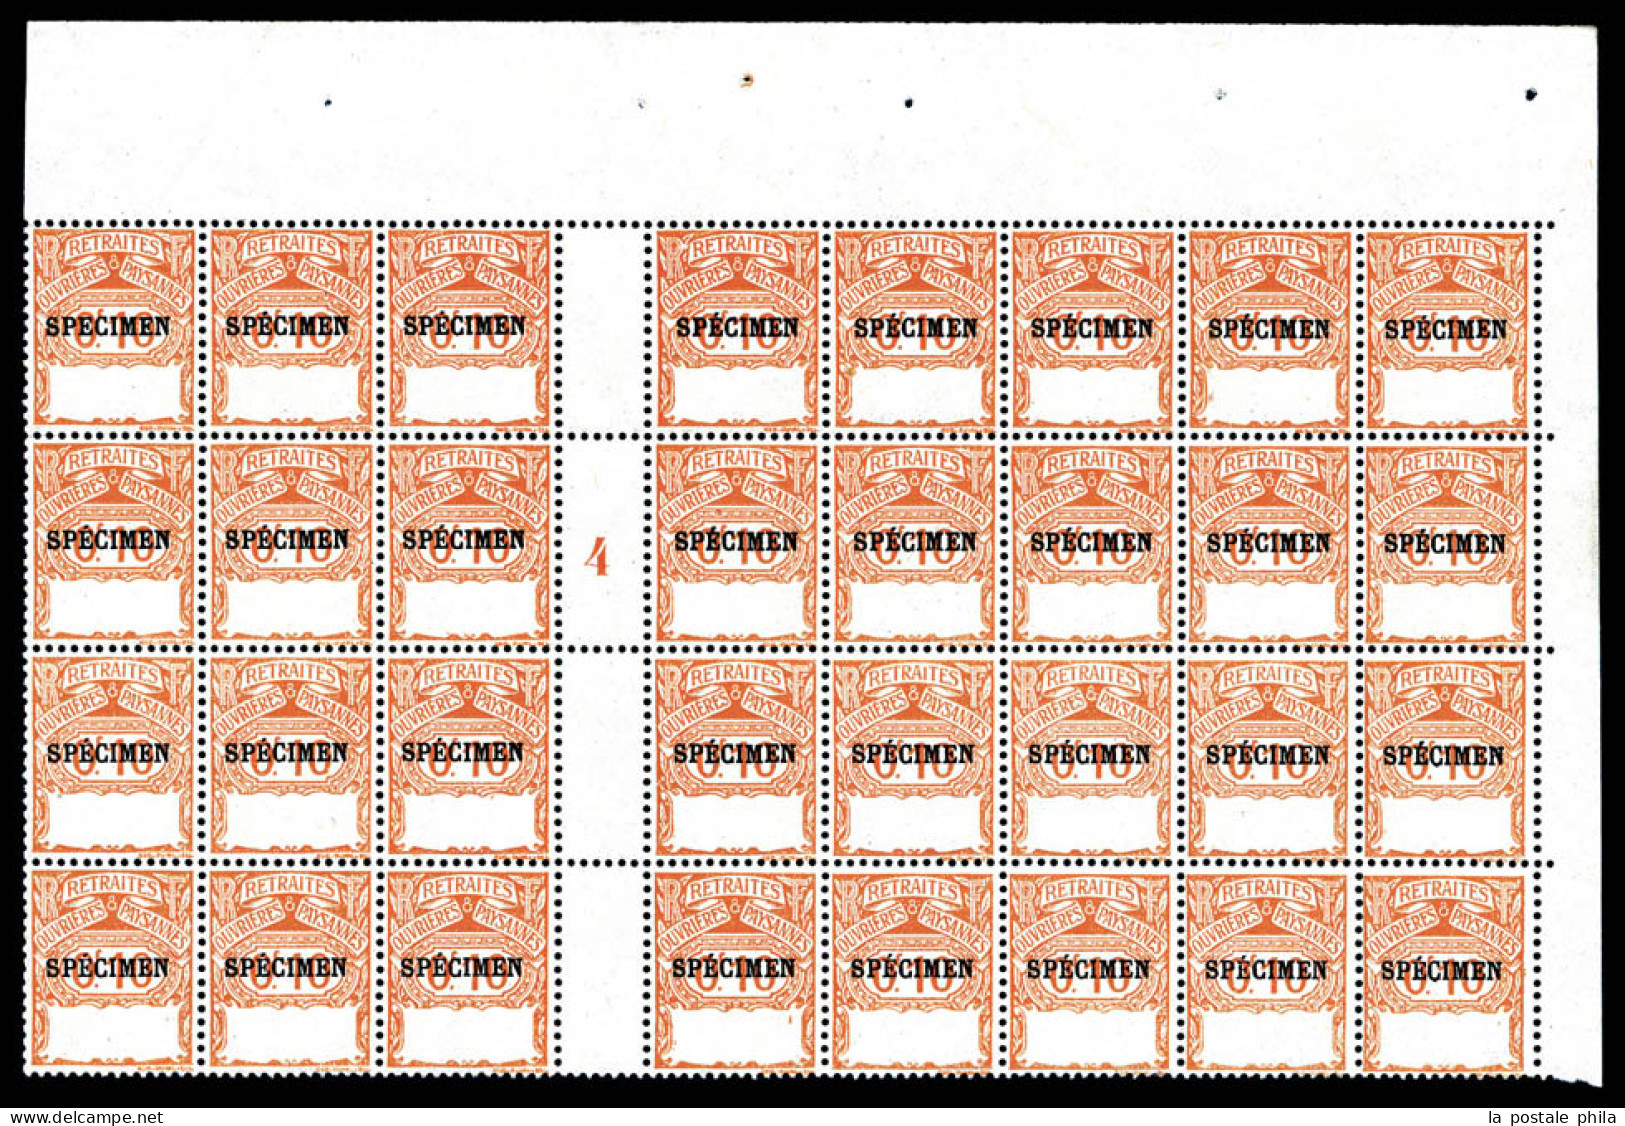 ** TIMBRES SOCIO-POSTAUX, Emission De 1911: Retraite Ouvrière Paysane: 0.10f Orange Type Cadre Vide, Panneau De 32 Exemp - Cursussen